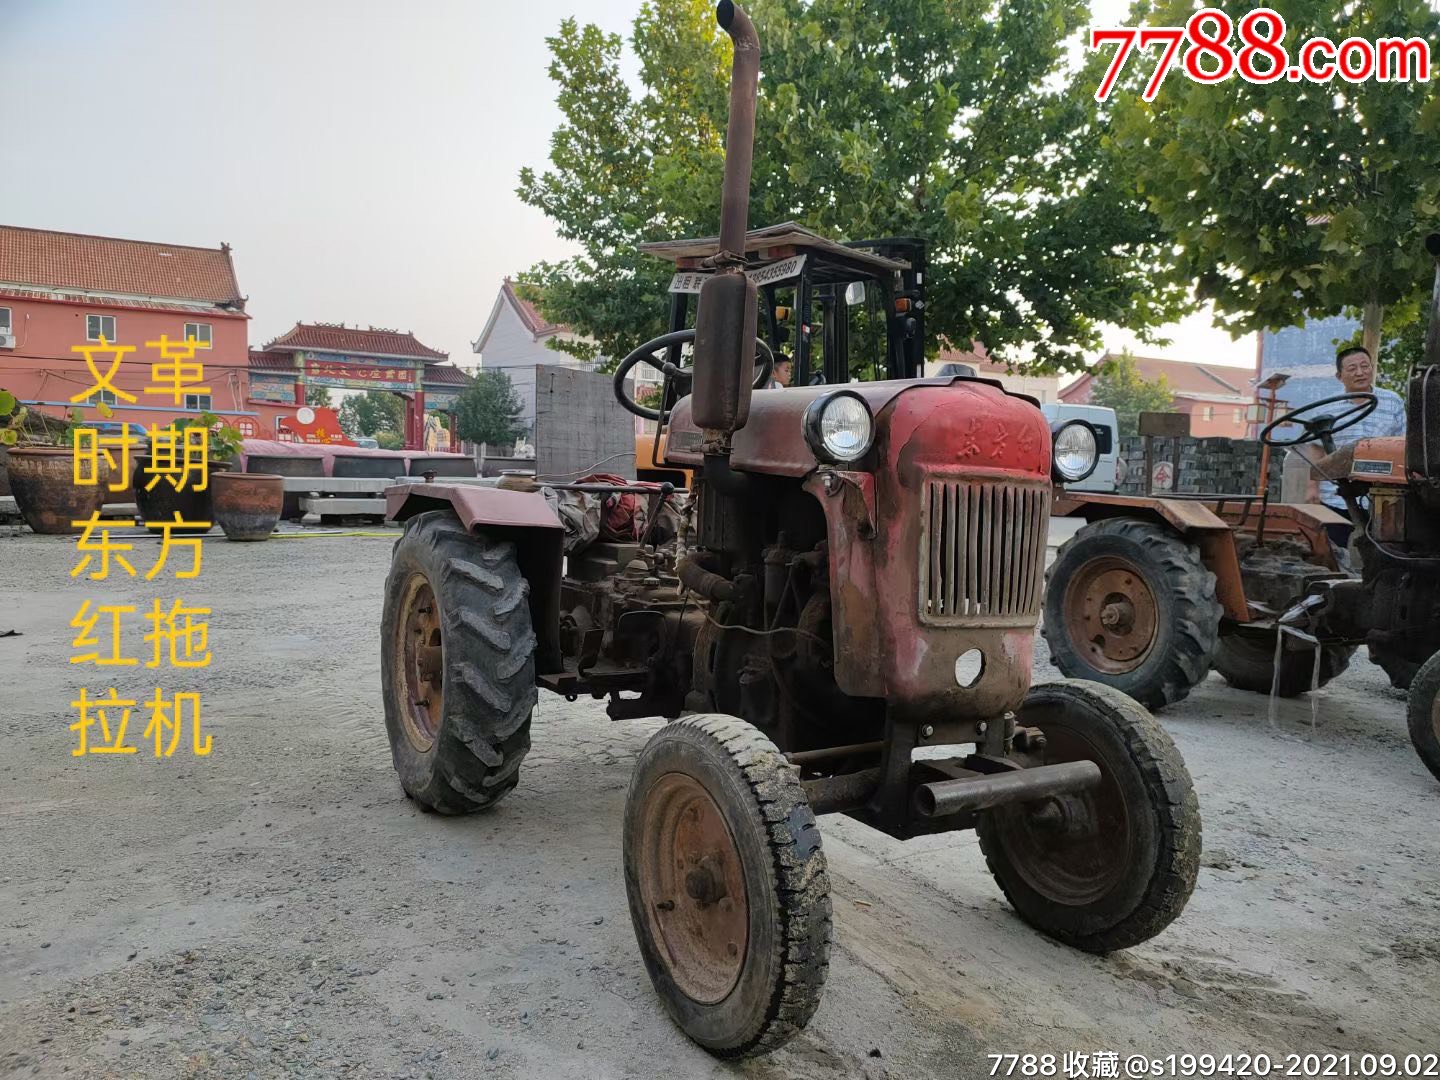 民俗精品东方牌红第代拖拉机品如相图能常使用包老其他收藏品